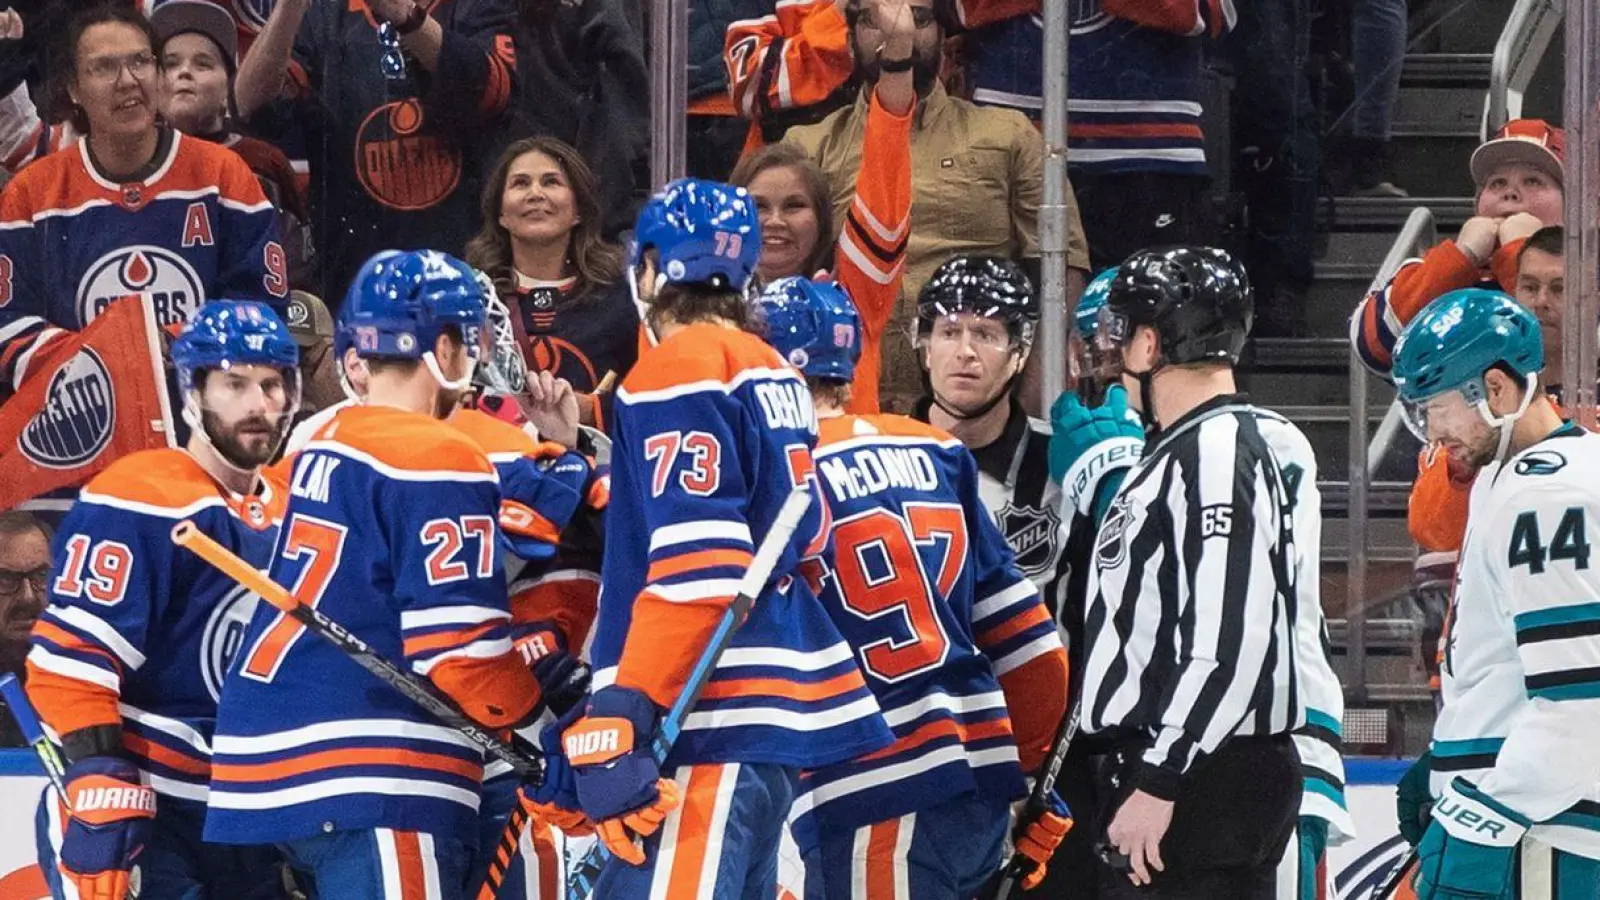 Eishockey: Marc-Edouard Vlasic (44) von den San Jose Sharks sieht zu, wie die Edmonton Oilers während des ersten Drittels ein Tor feiern. (Foto: JASON FRANSON/The Canadian Press/AP/dpa)